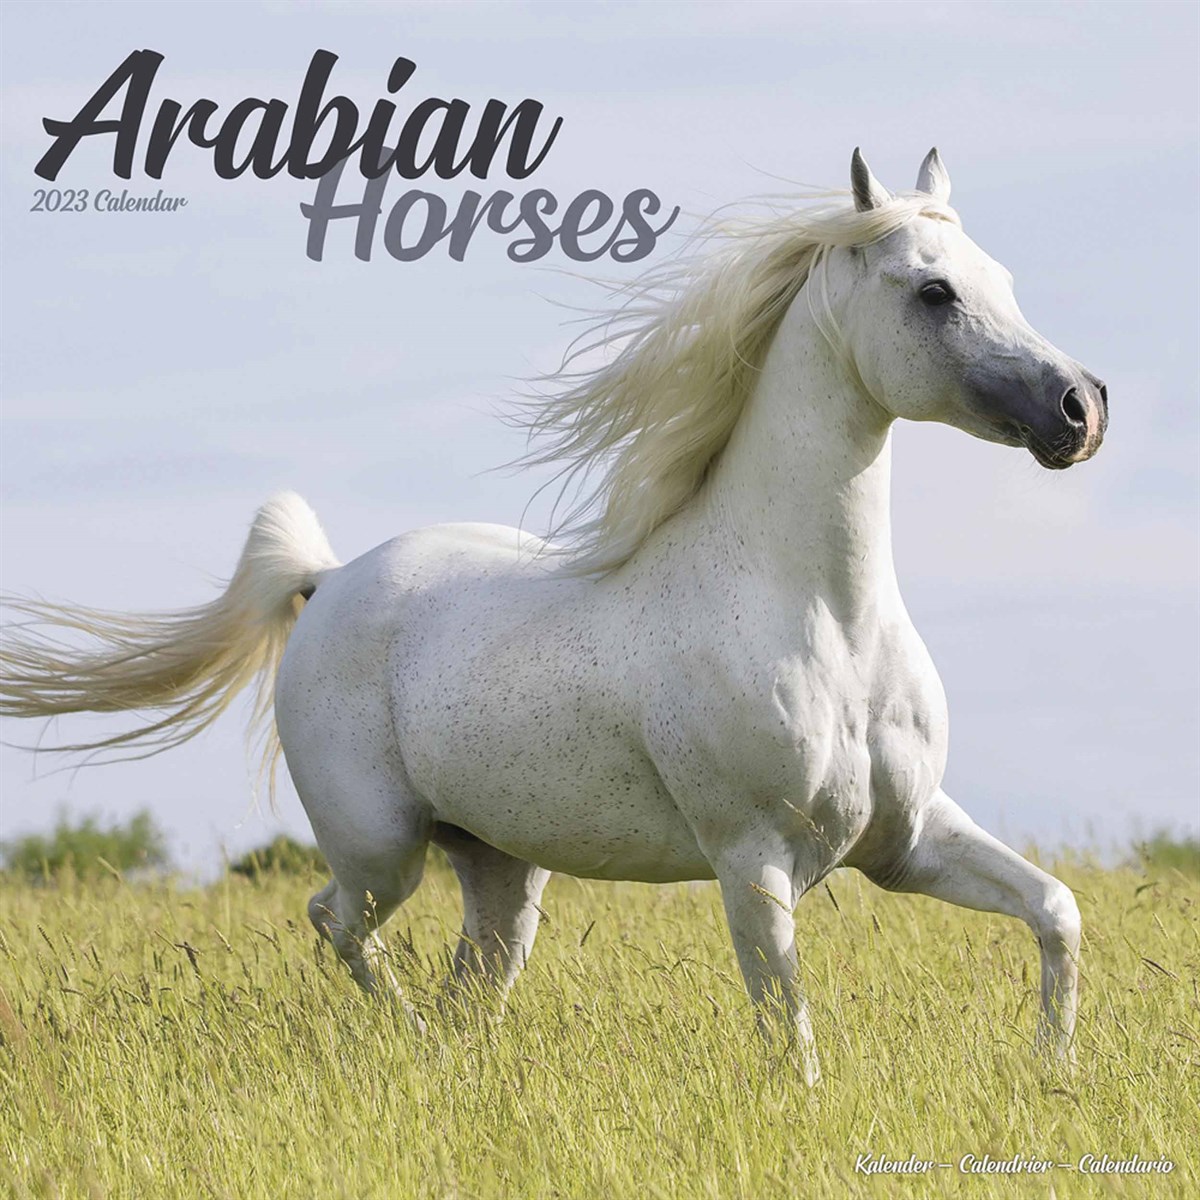 Arabian Horses 2023 Calendars